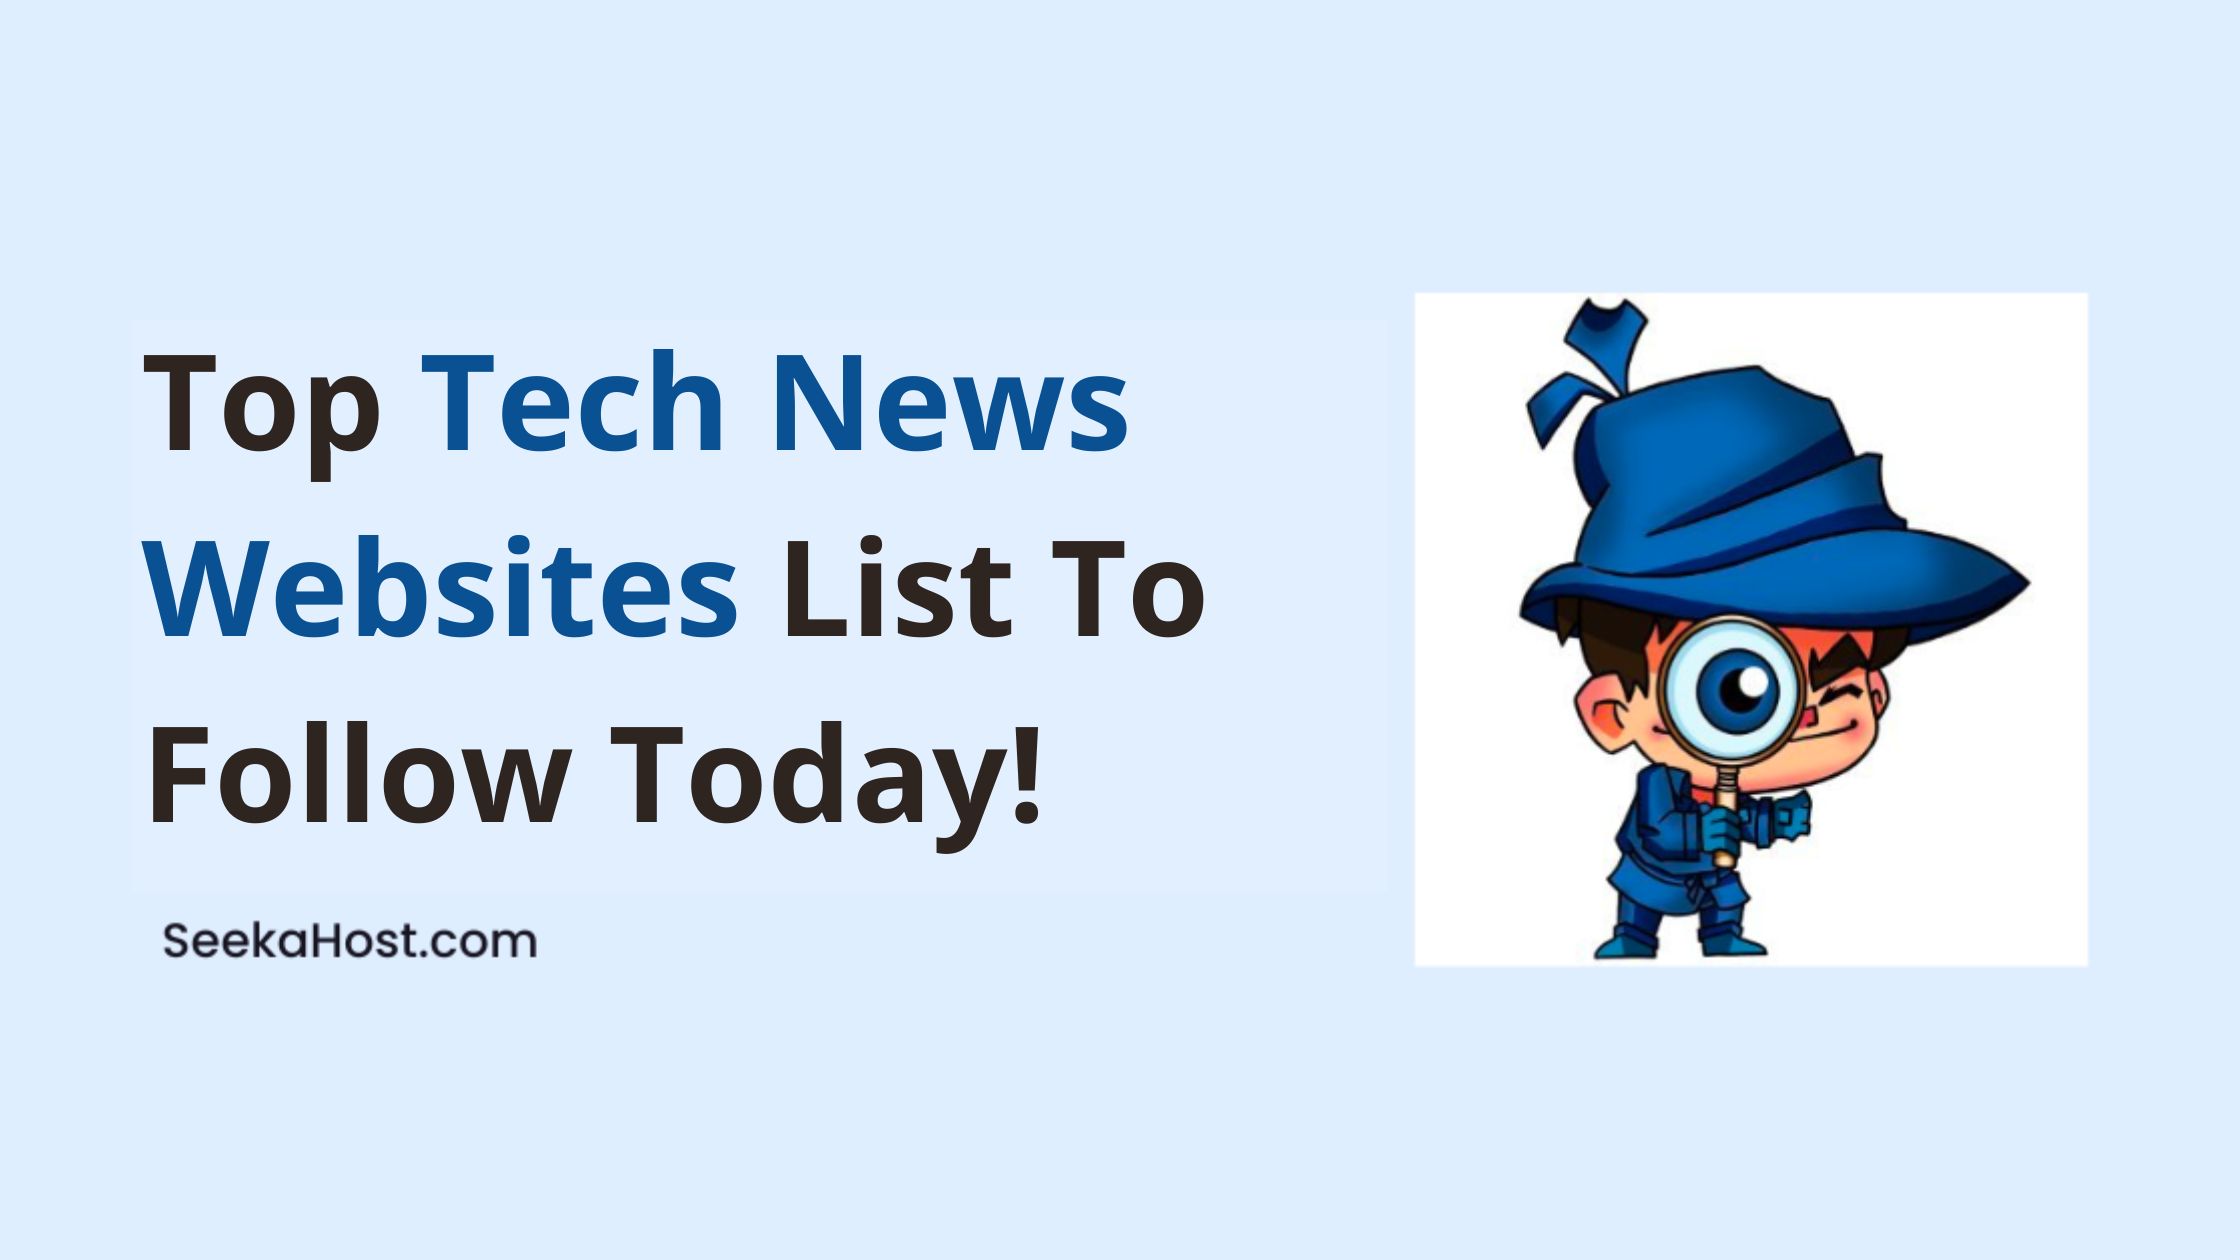 List of Top Tech News Websites